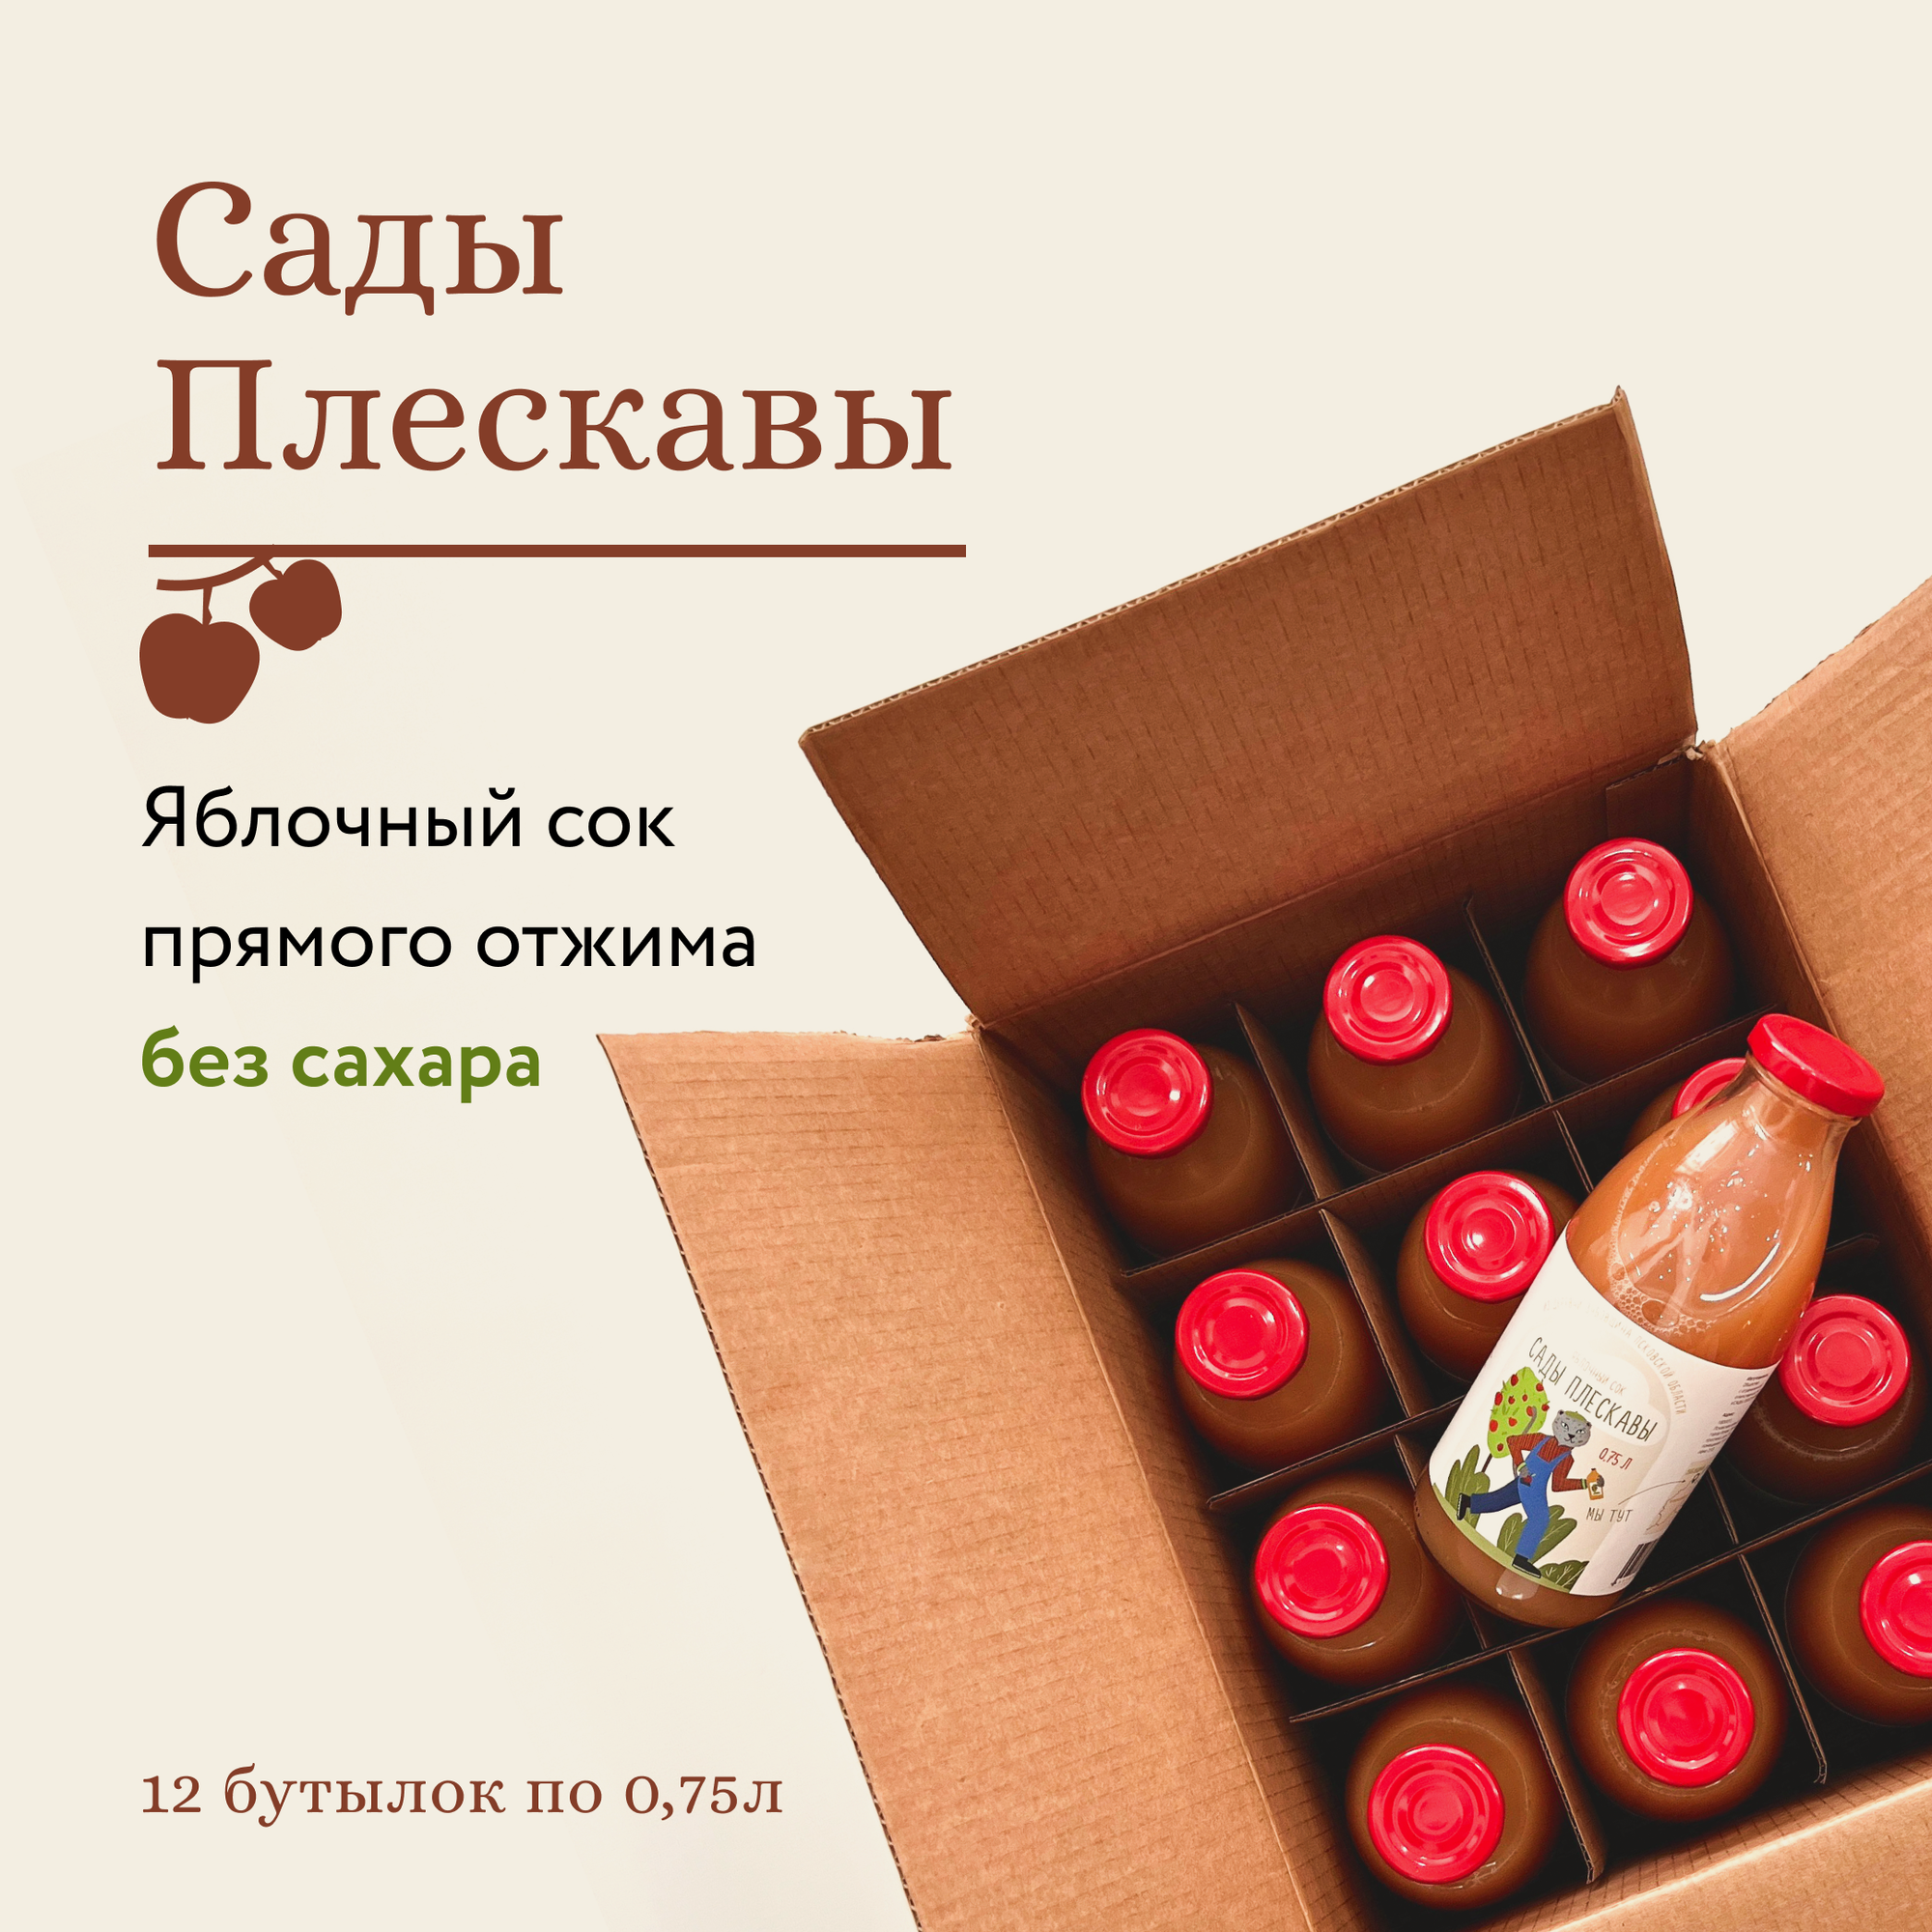 Сок яблочный «Сады Плескавы» натуральный прямого отжима без сахара 1 коробка (12 бутылок по 0,75 л)